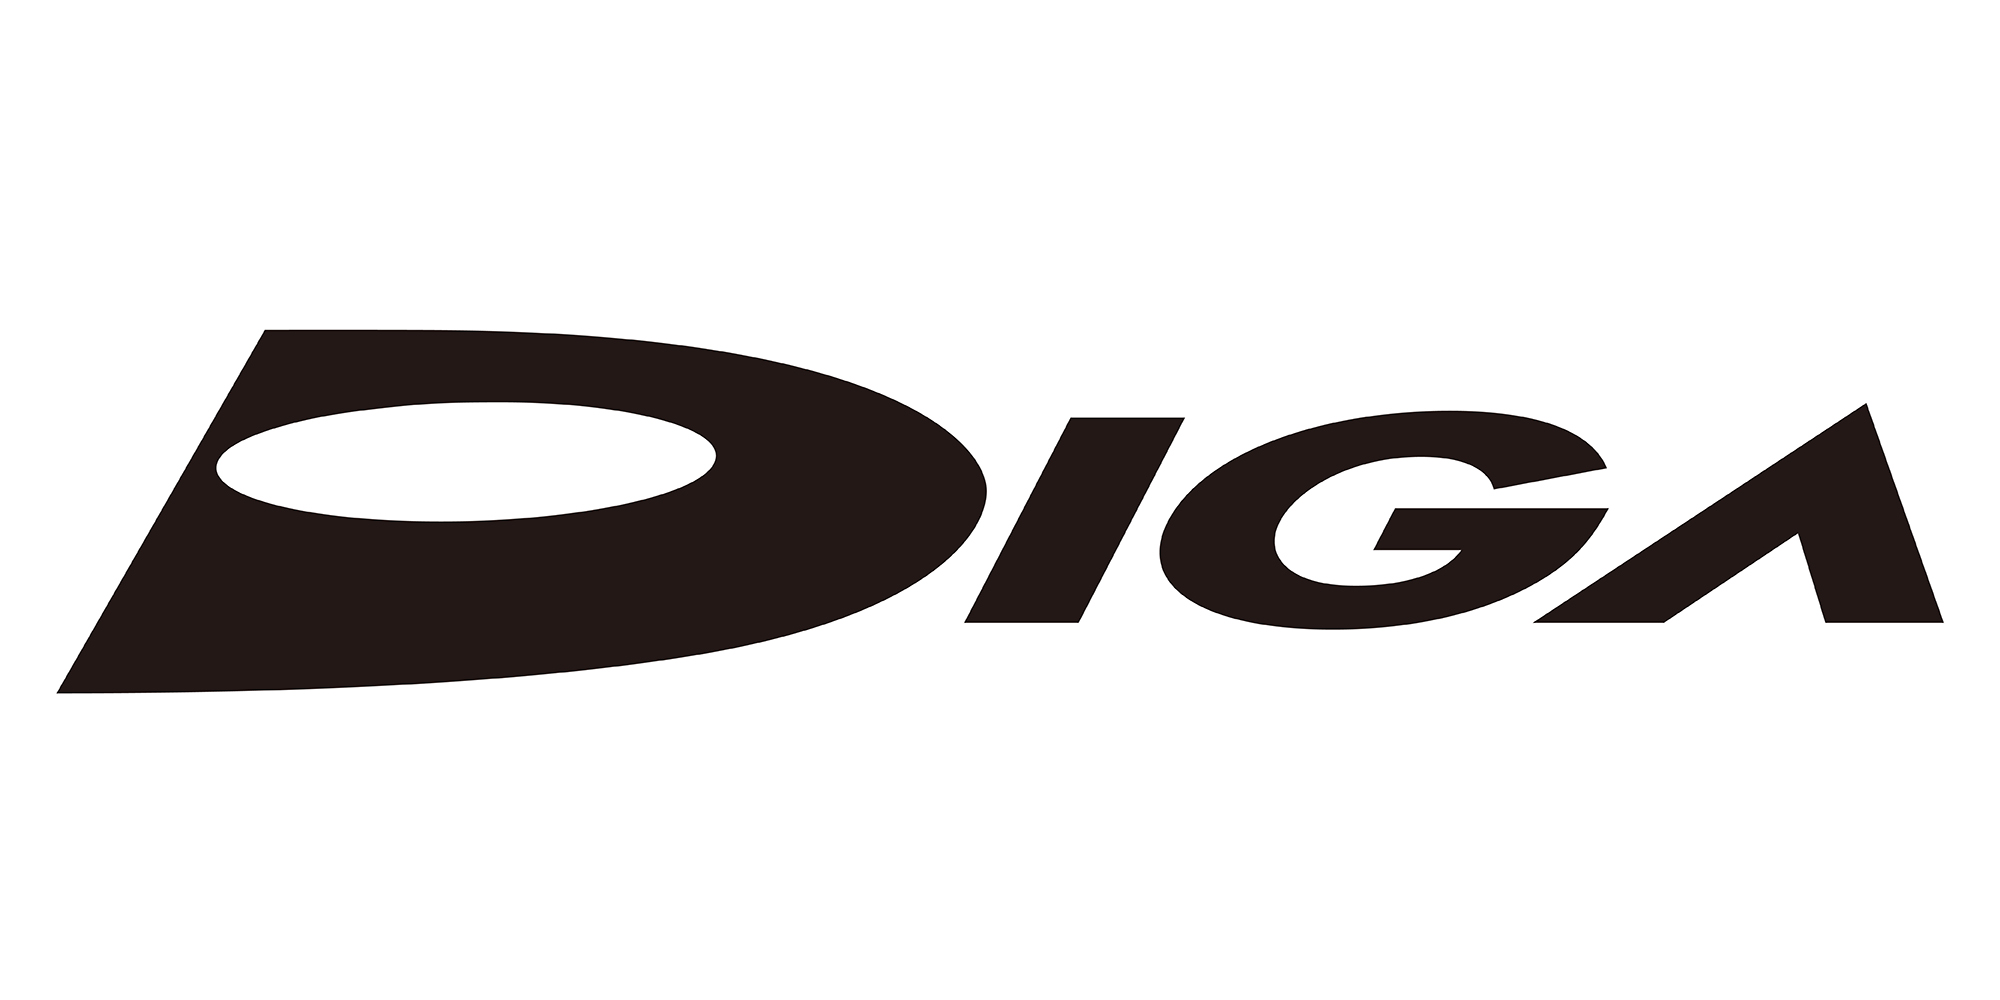 DIGA logo design